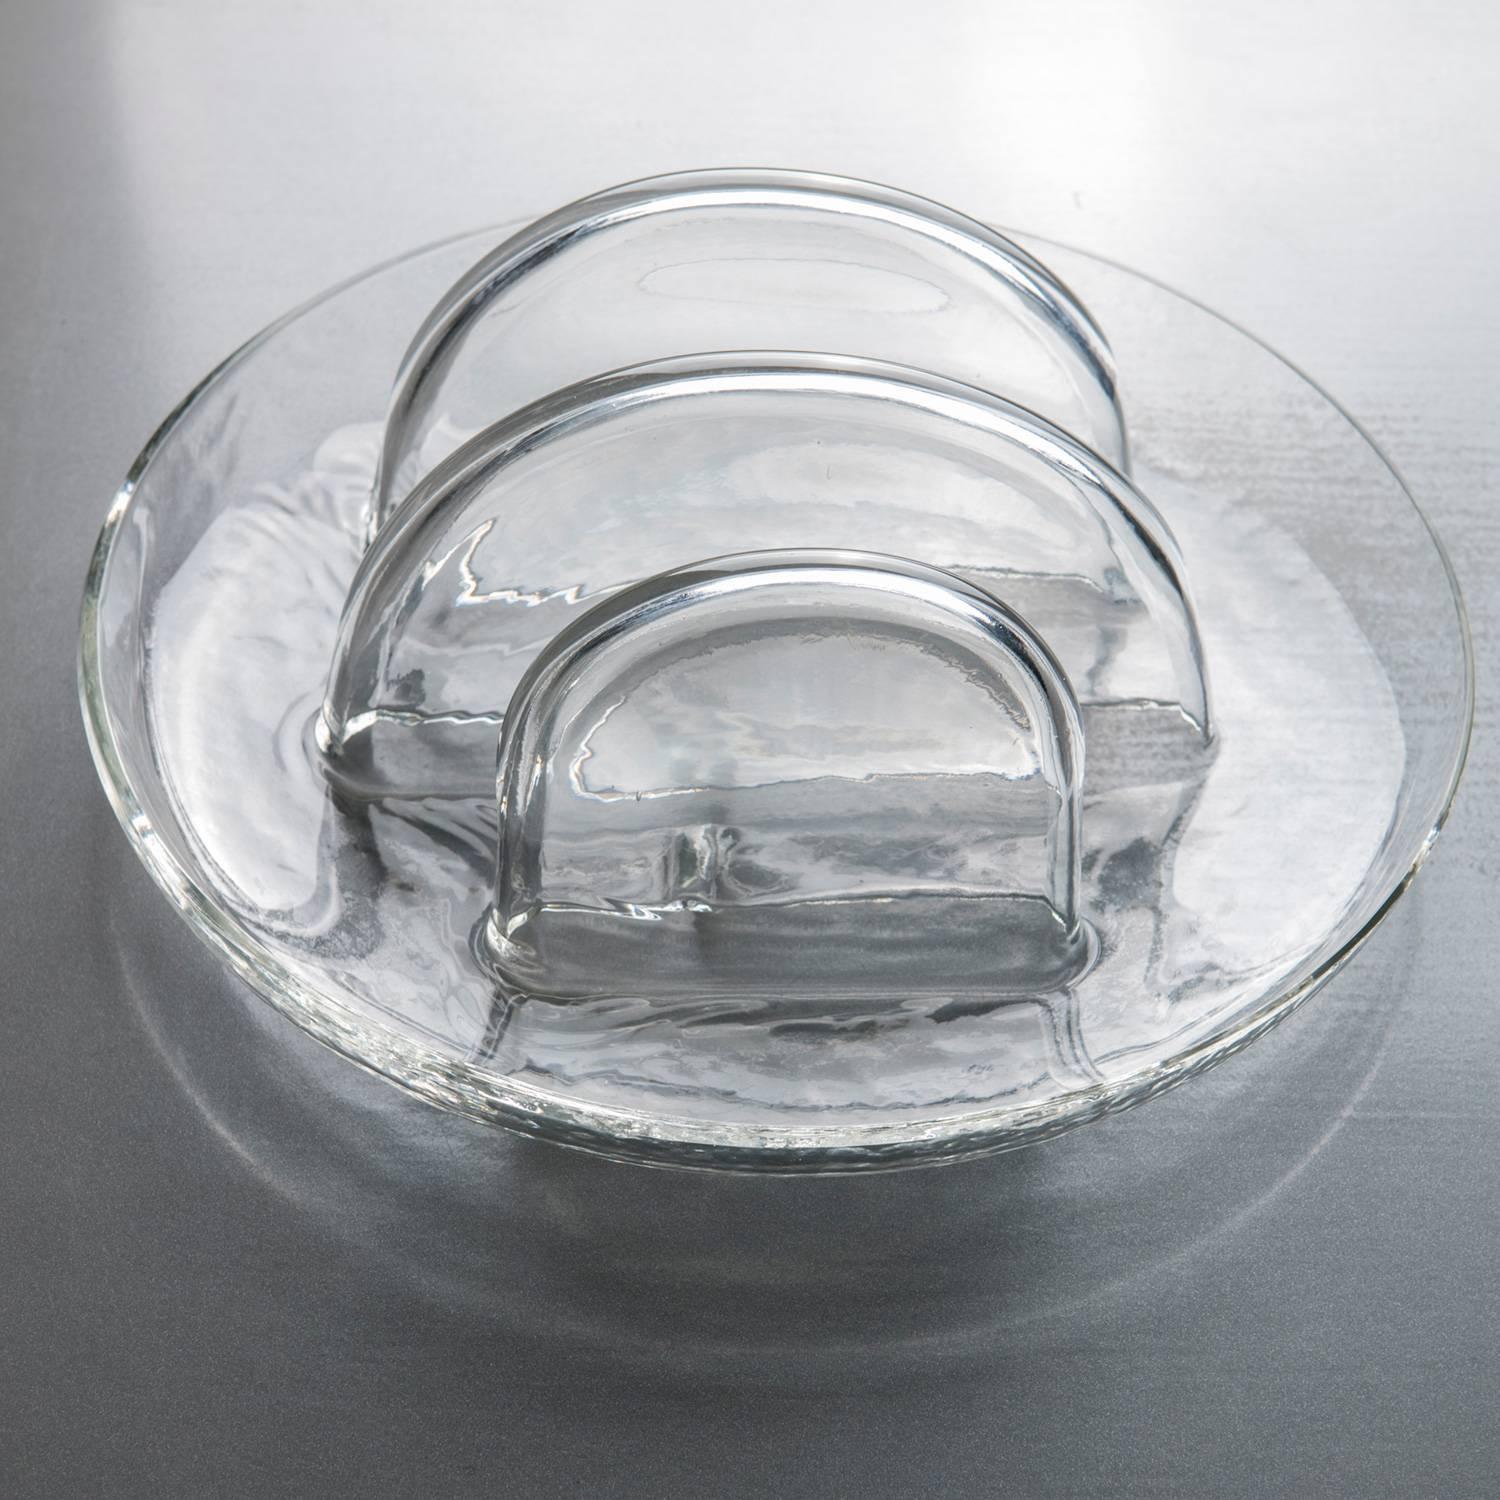 Tafelaufsatz aus Murano-Glas von Toni Zuccheri für VeArt.
Dickes transparentes Glas und einfache runde Formen.
 